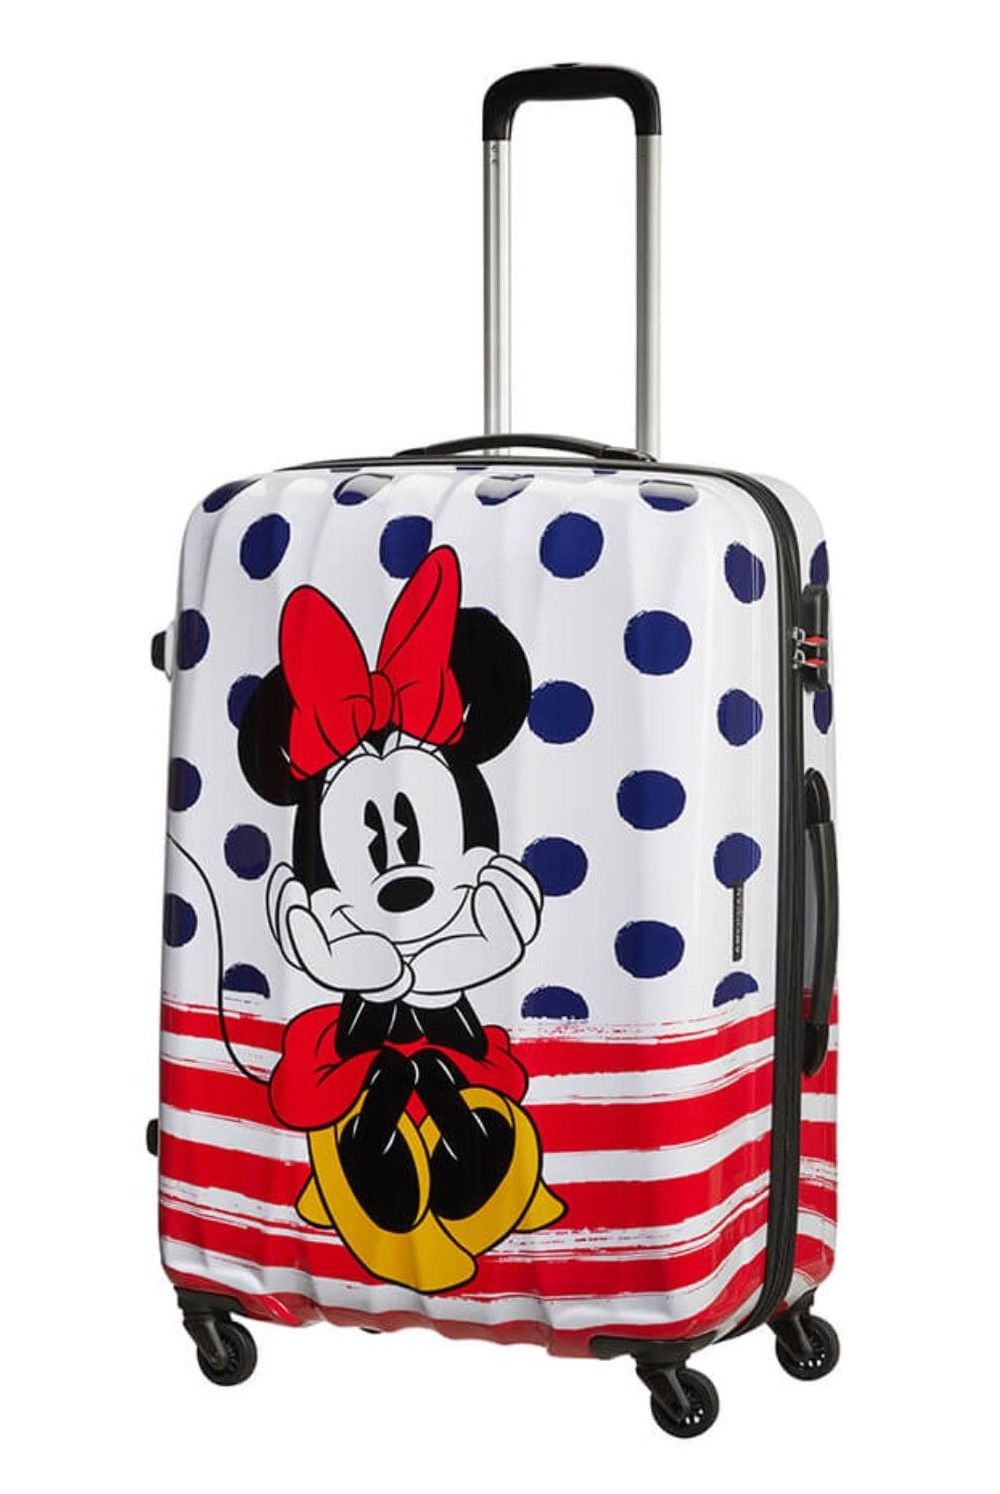 AT children's suitcase Minnie Blue Dot 65 cm 52 Liter